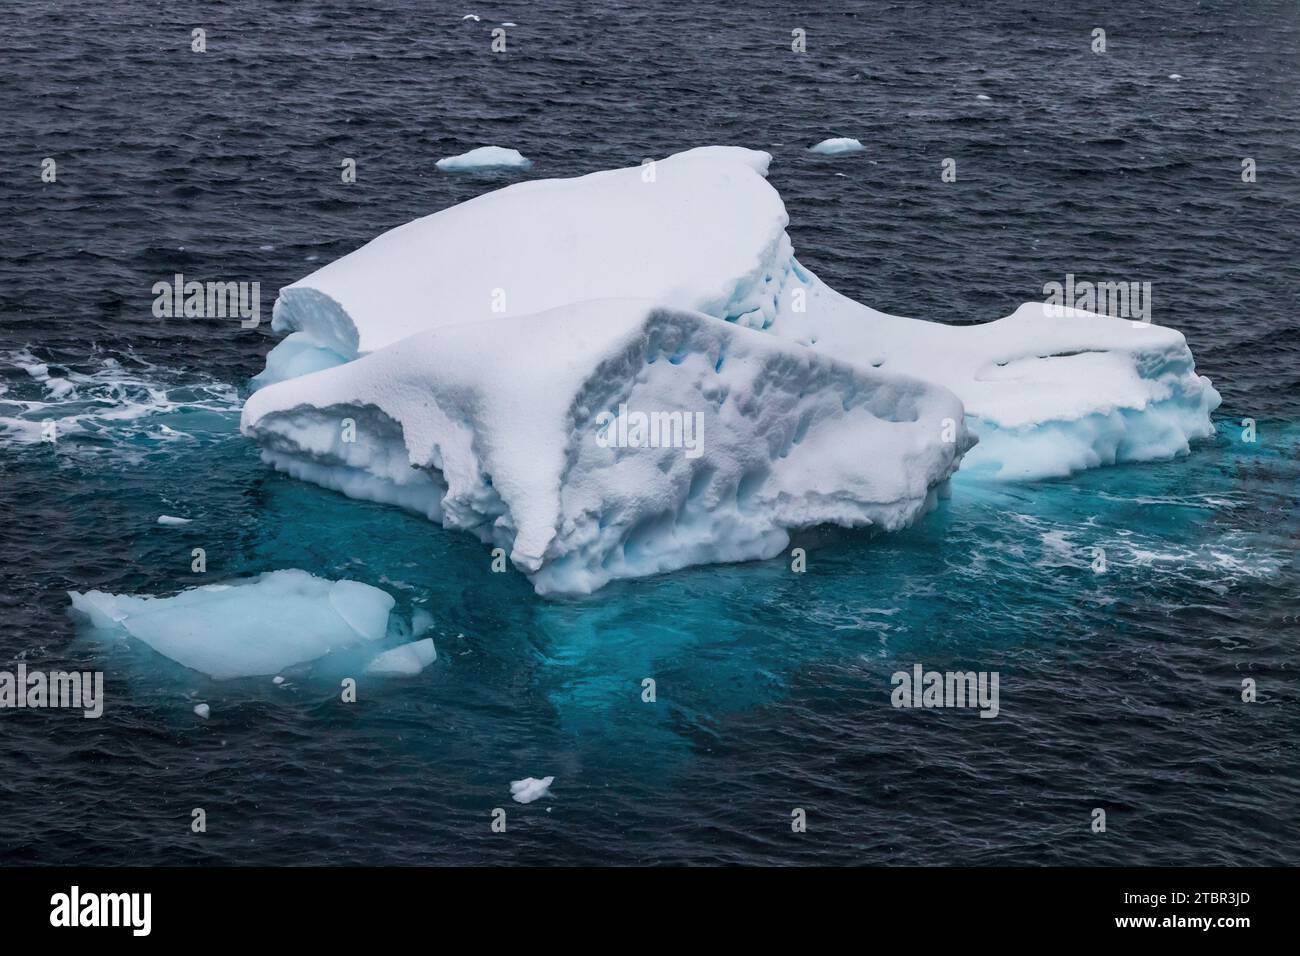 Iceberg flottant près de la péninsule antarctique. Glace bleue ; la partie inférieure de l'iceberg peut être vue sous l'eau. Banque D'Images